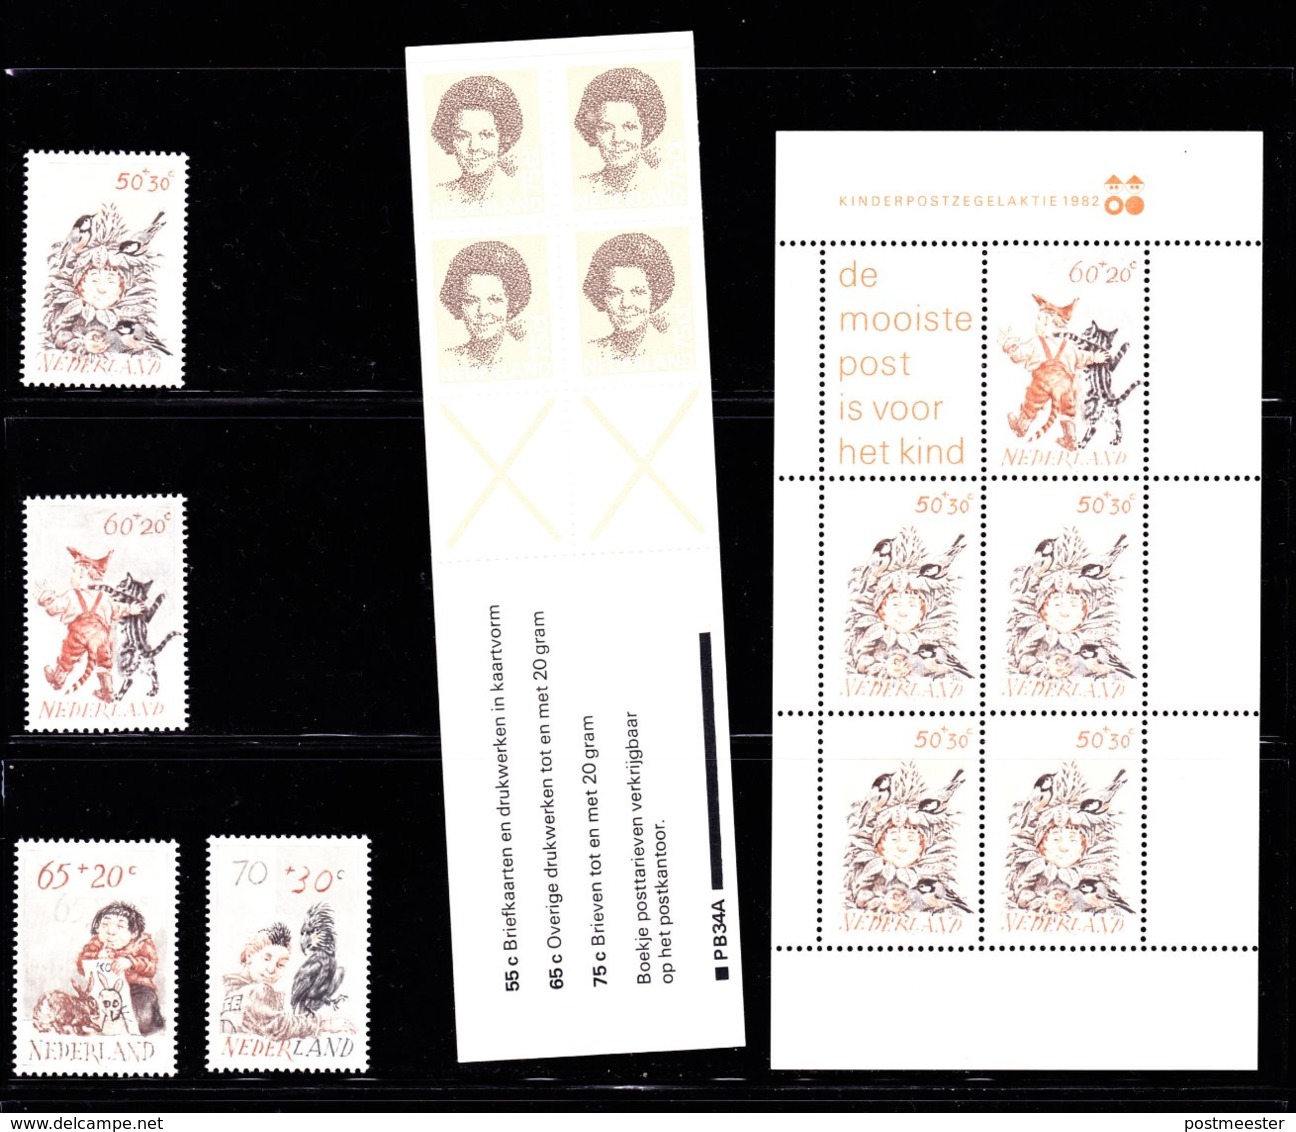 Nederland: Volledig Jaar 1982 - 19 Zegels, 1 Blok, 1 Boekje - Postfris - Full Years